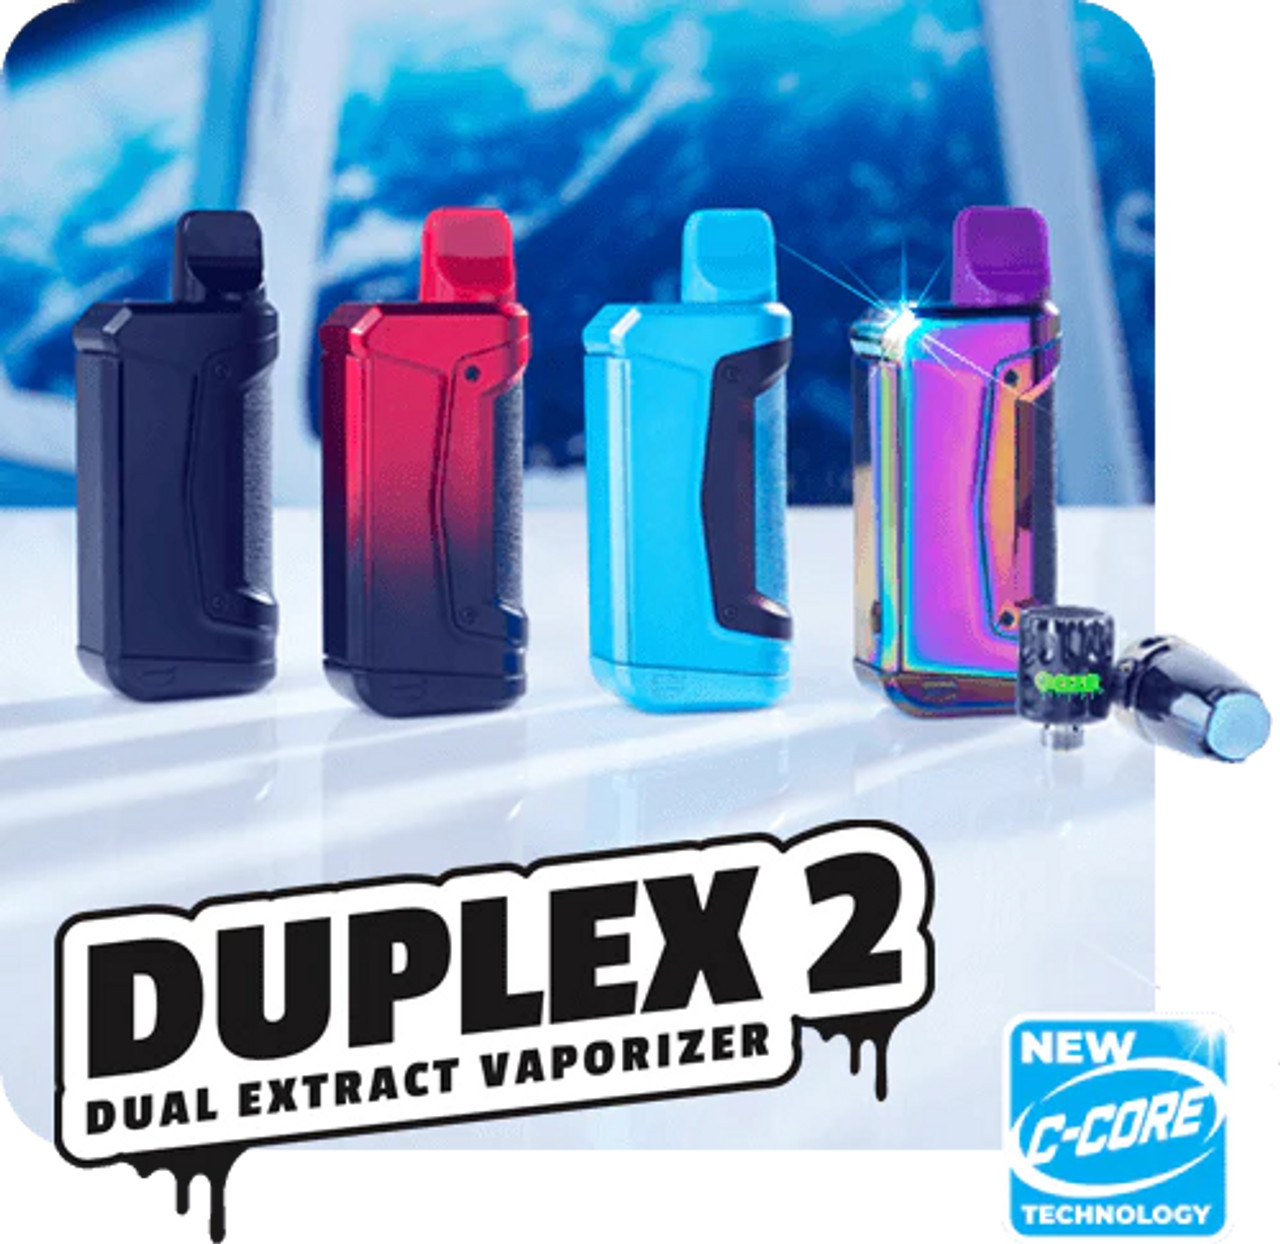 Ooze Duplex 2 – 900 MAh C-Core Vaporizer | Assorted Colors